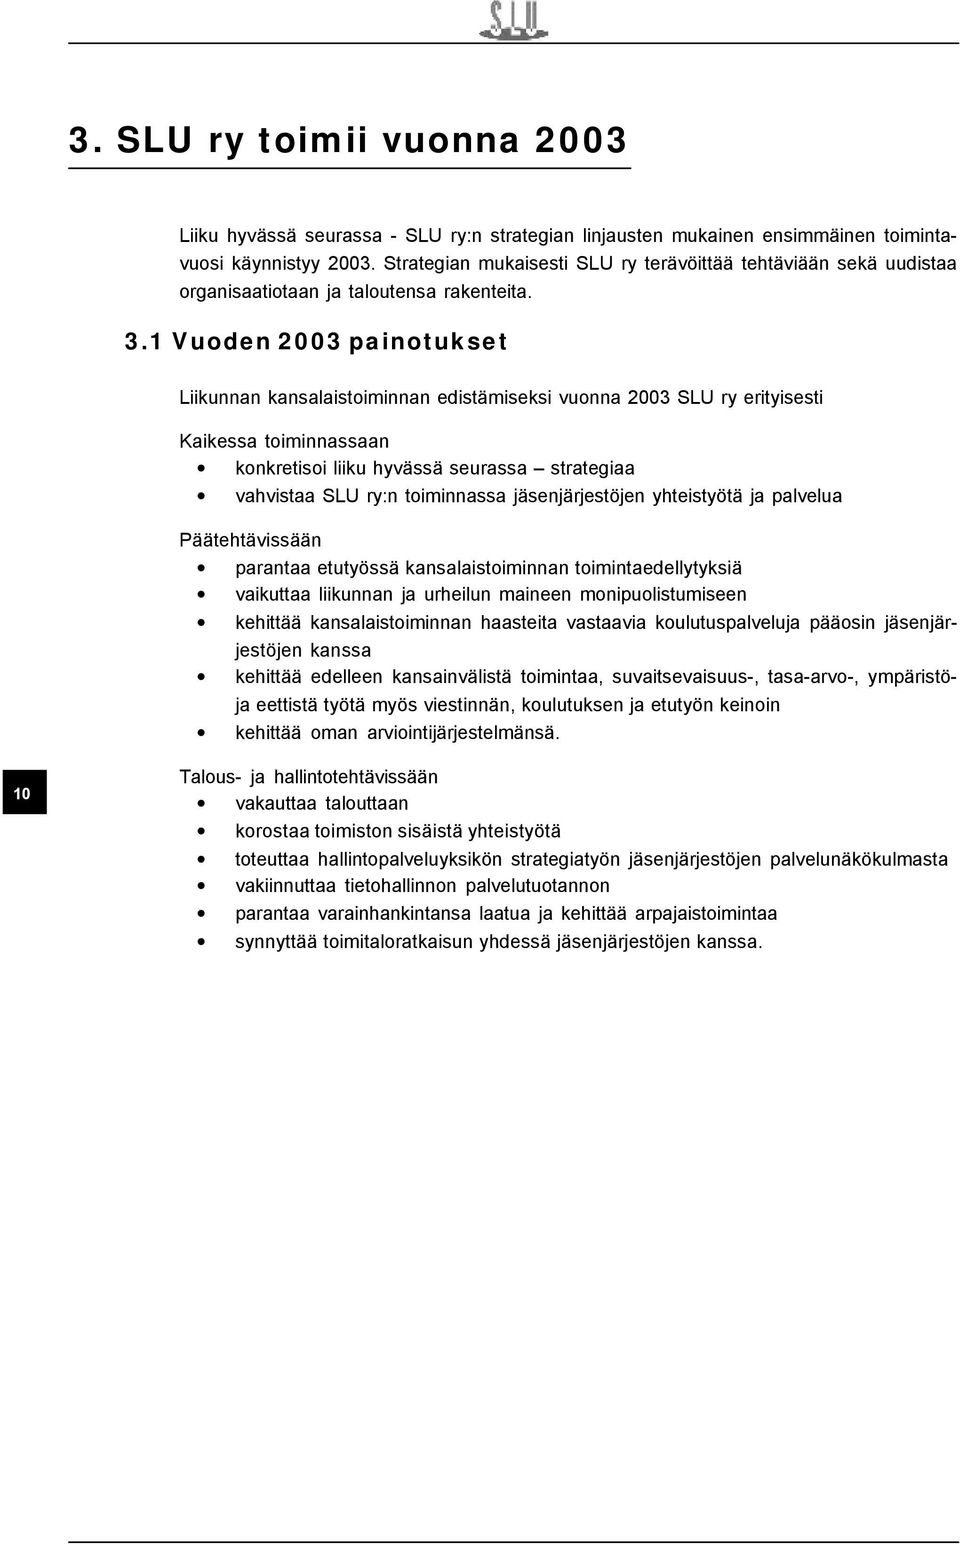 1 Vuoden 2003 painotukset Liikunnan kansalaistoiminnan edistämiseksi vuonna 2003 SLU ry erityisesti Kaikessa toiminnassaan konkretisoi liiku hyvässä seurassa strategiaa vahvistaa SLU ry:n toiminnassa